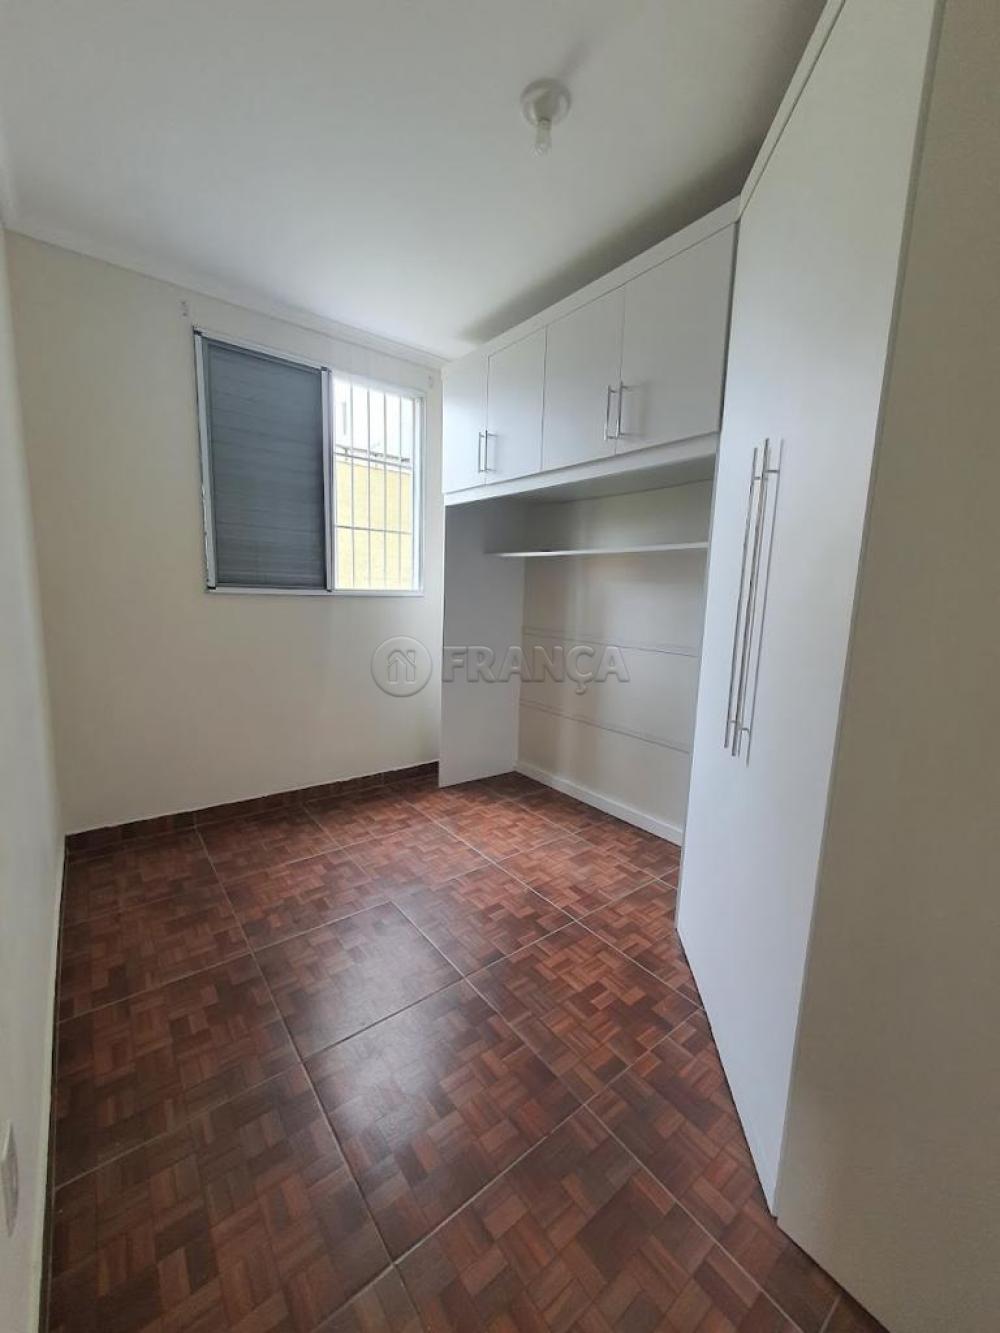 Alugar Apartamento / Padrão em Jacareí R$ 950,00 - Foto 9